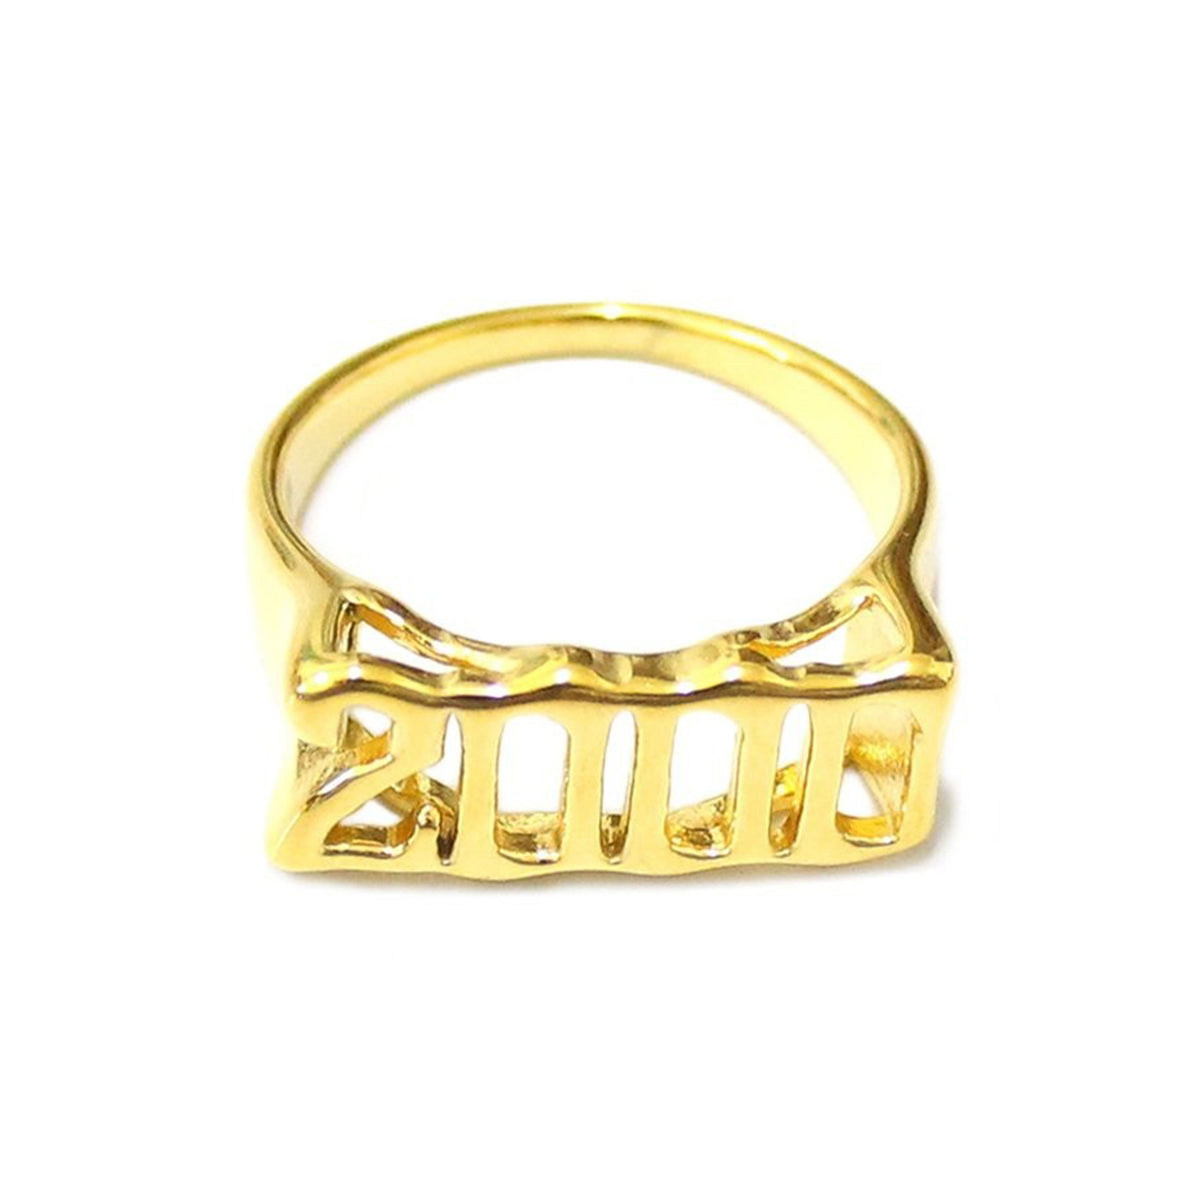 2000 Vintage Old English Birth Year Gold Metal Ring